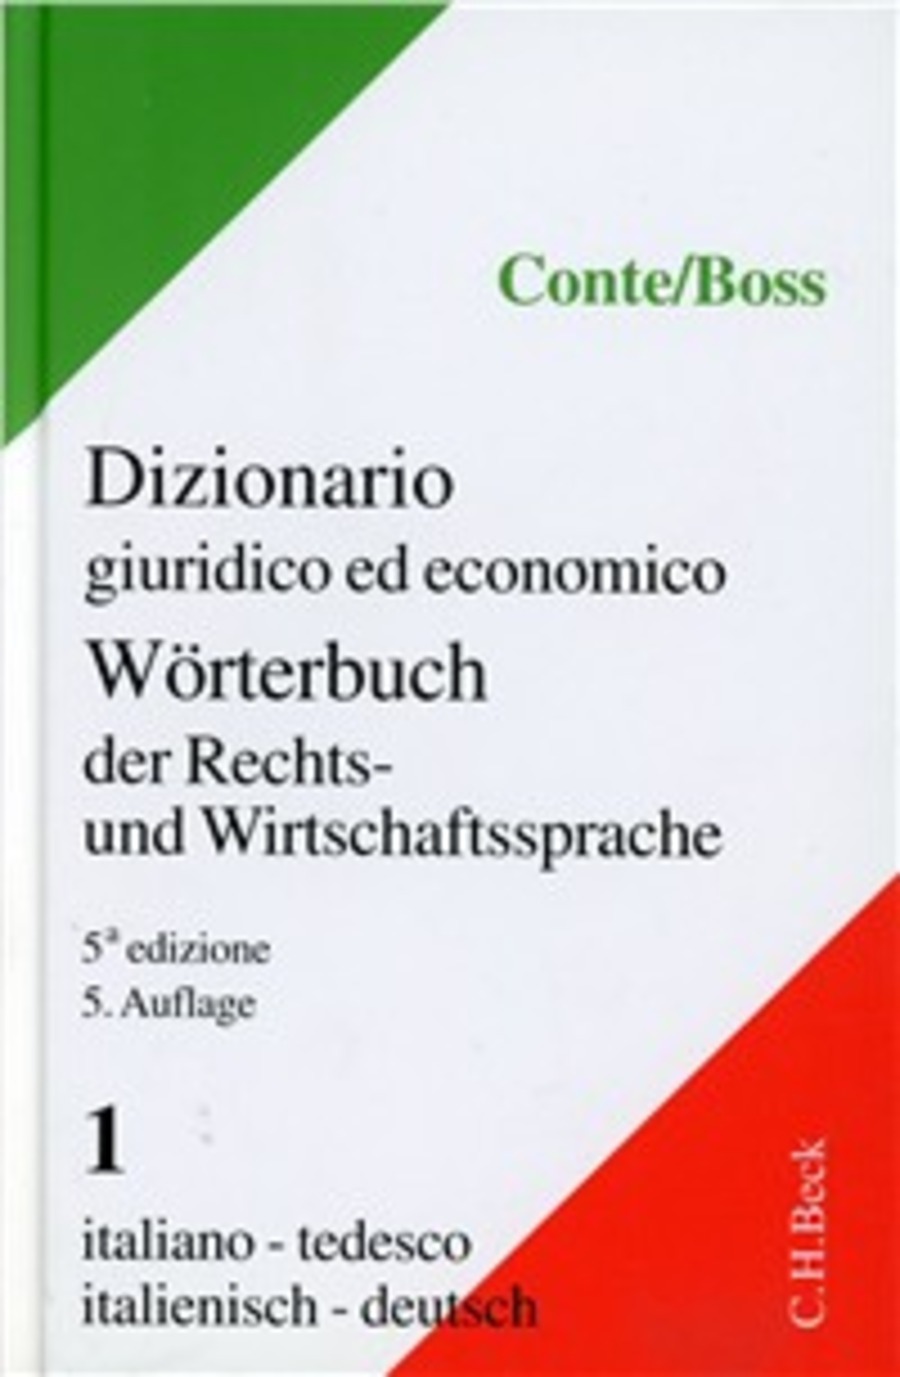 Dizionario giuridico ed economico. Worterbuch der Rechts-und Wirtschaftssprache